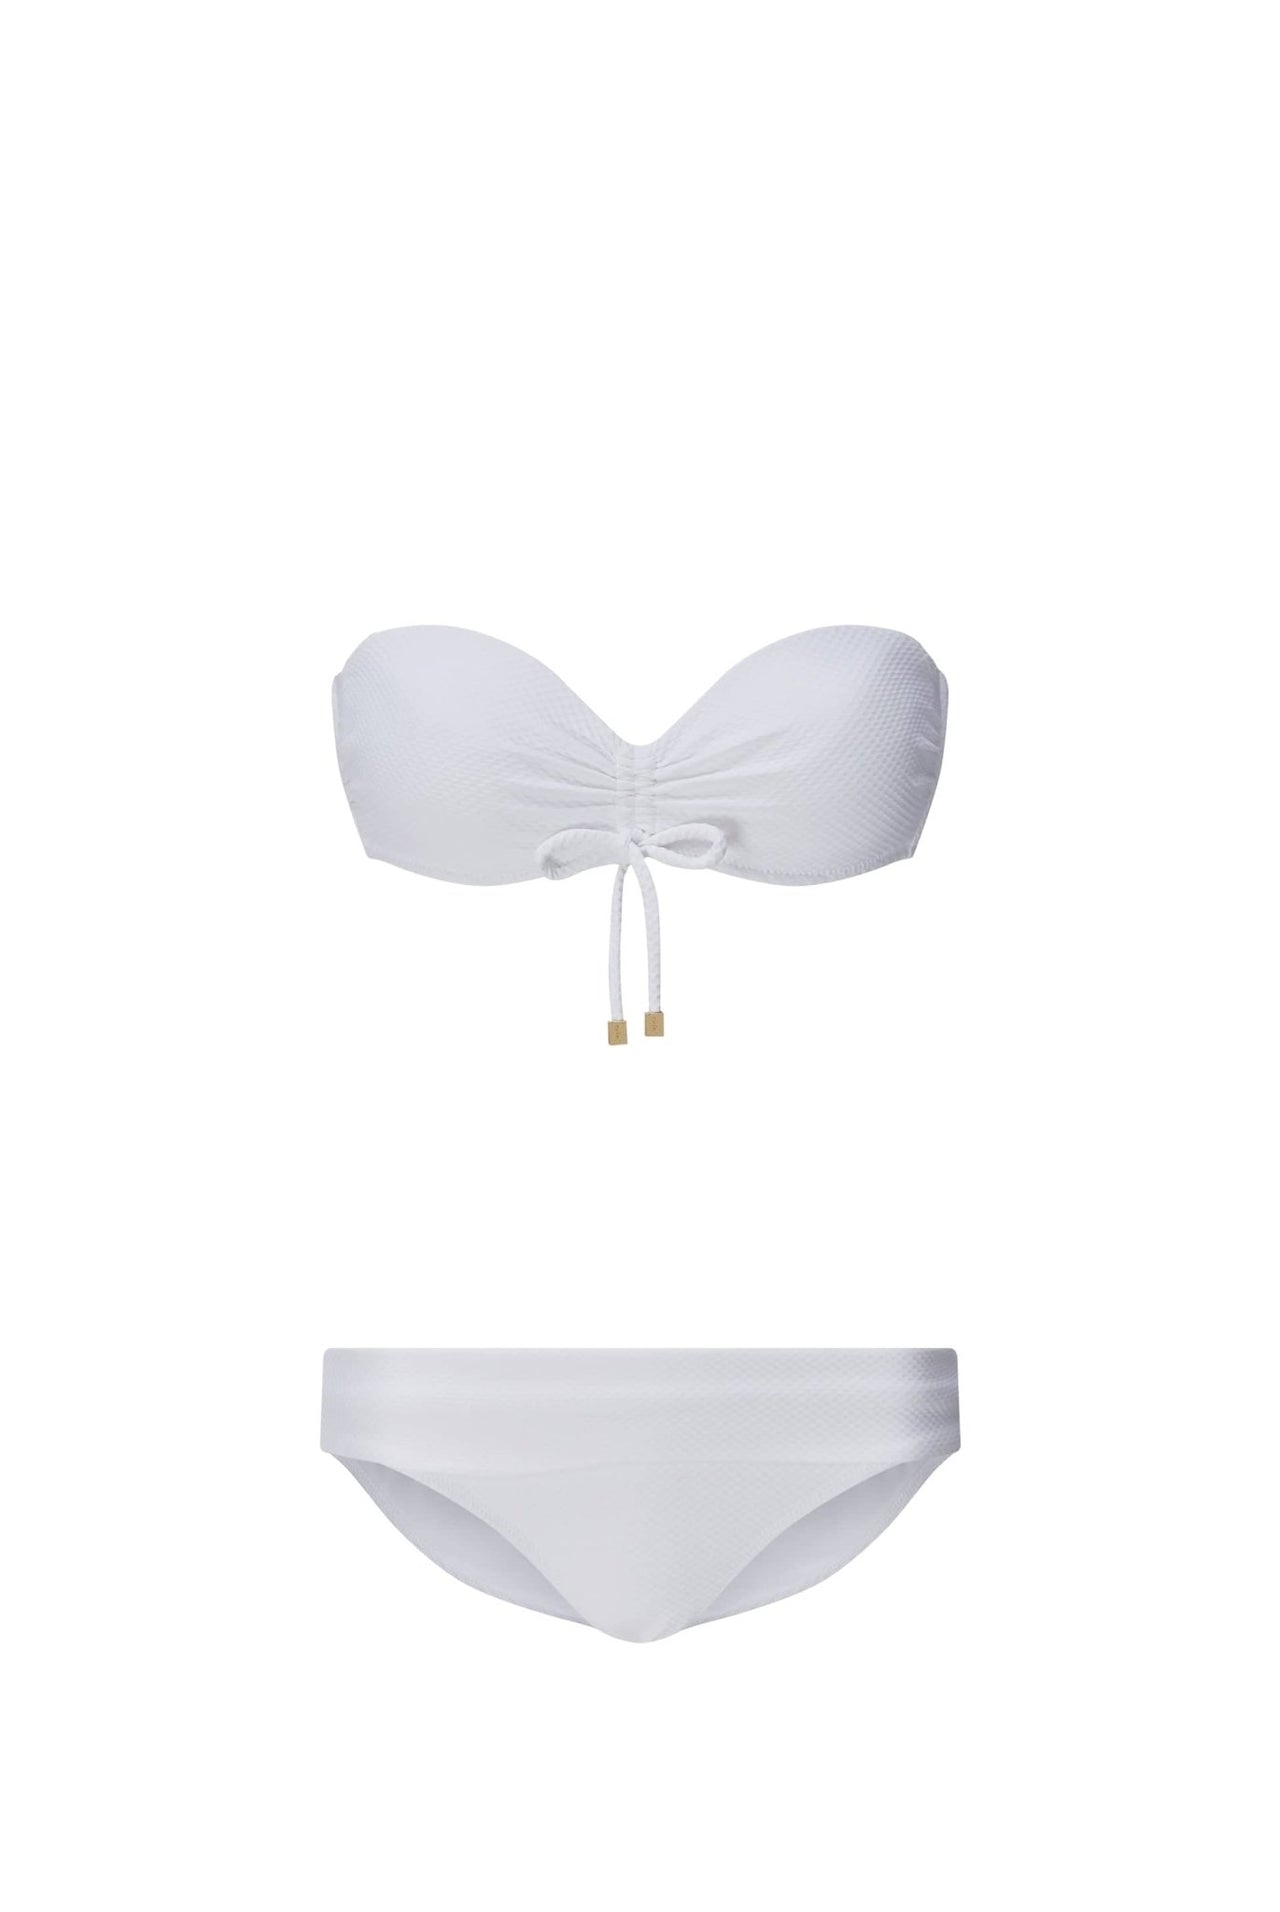 Melissa Odabash Ibiza White Slit Bandeau Bikini